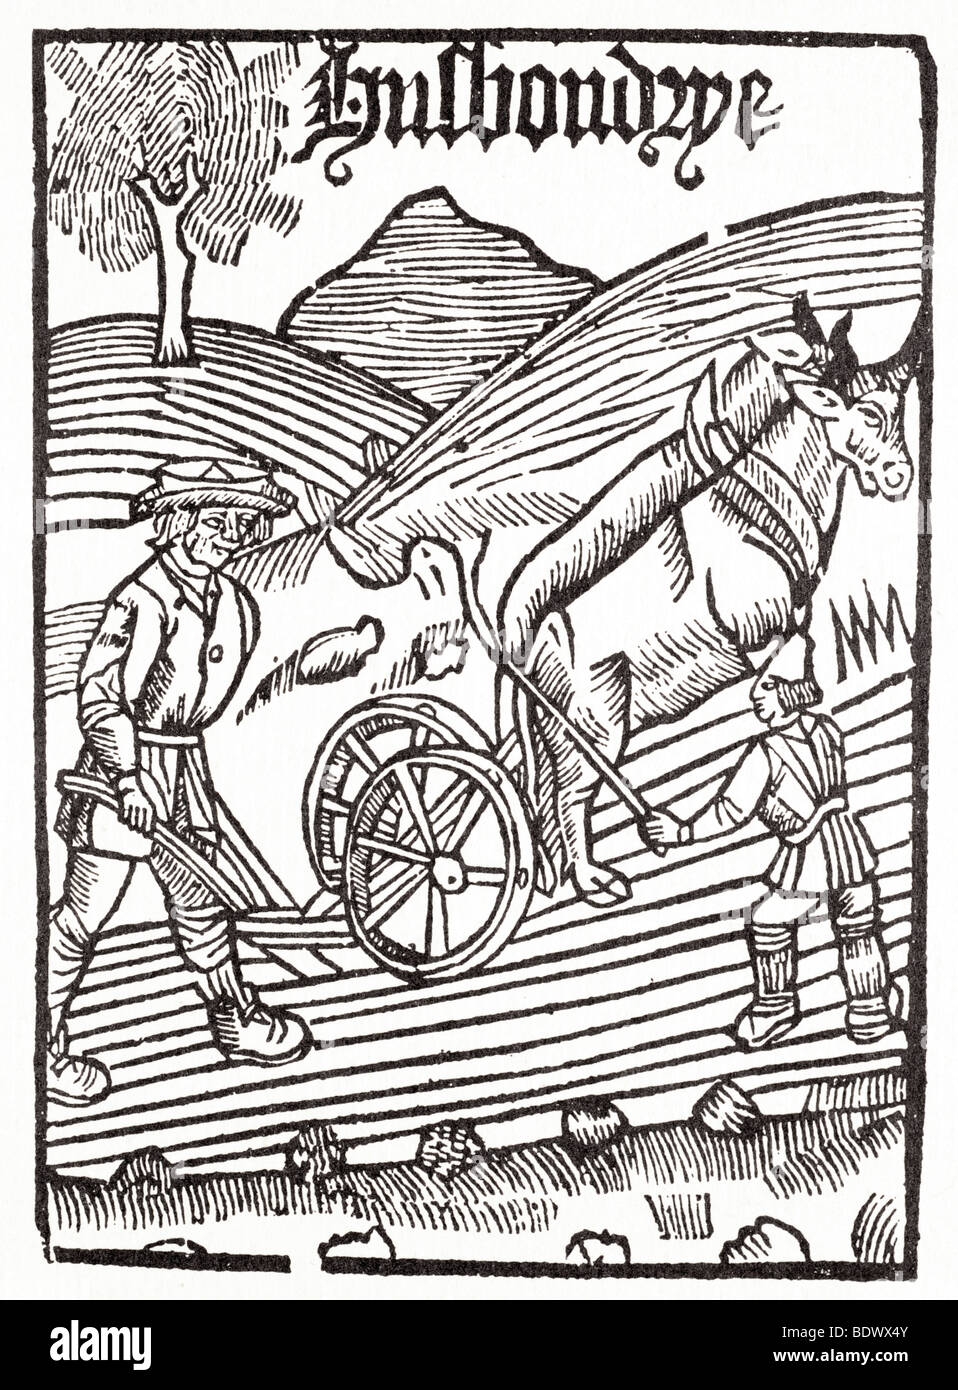 P treveris 1525 john fitzherbert newe tracte pour husbade les hommes un agriculteur de guider une charrue à deux roues tiré par deux boeufs avec un garçon Banque D'Images